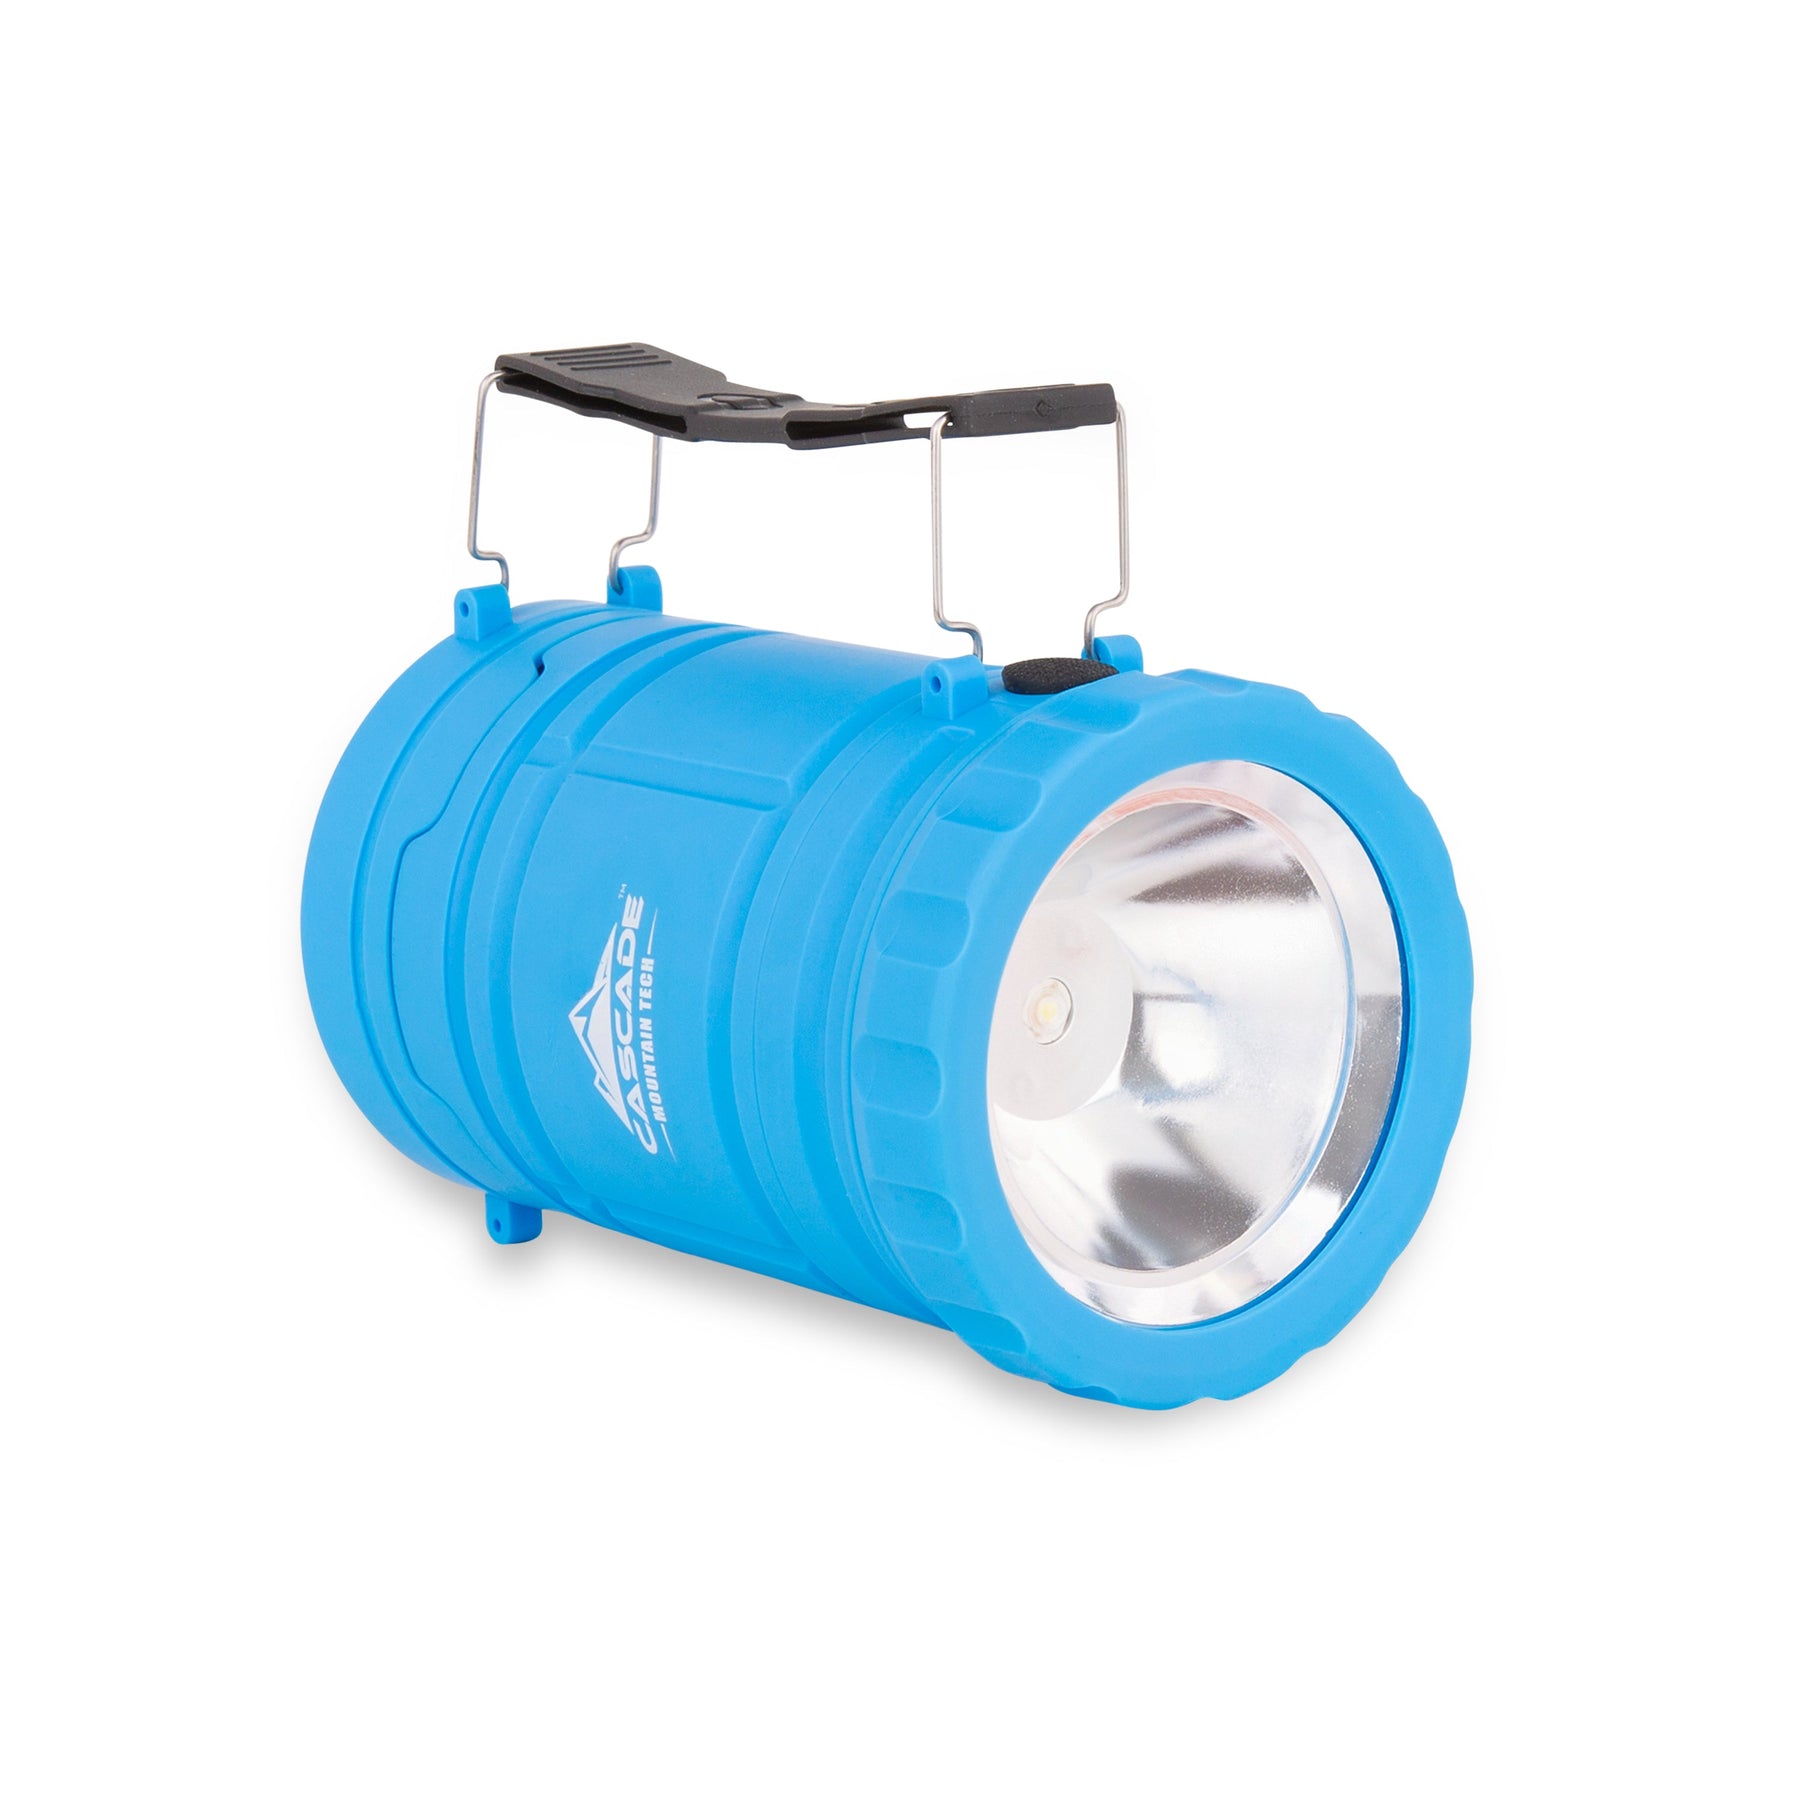 New, Cascade Mountain Tech Blue Convertible Lantern & Flashlight